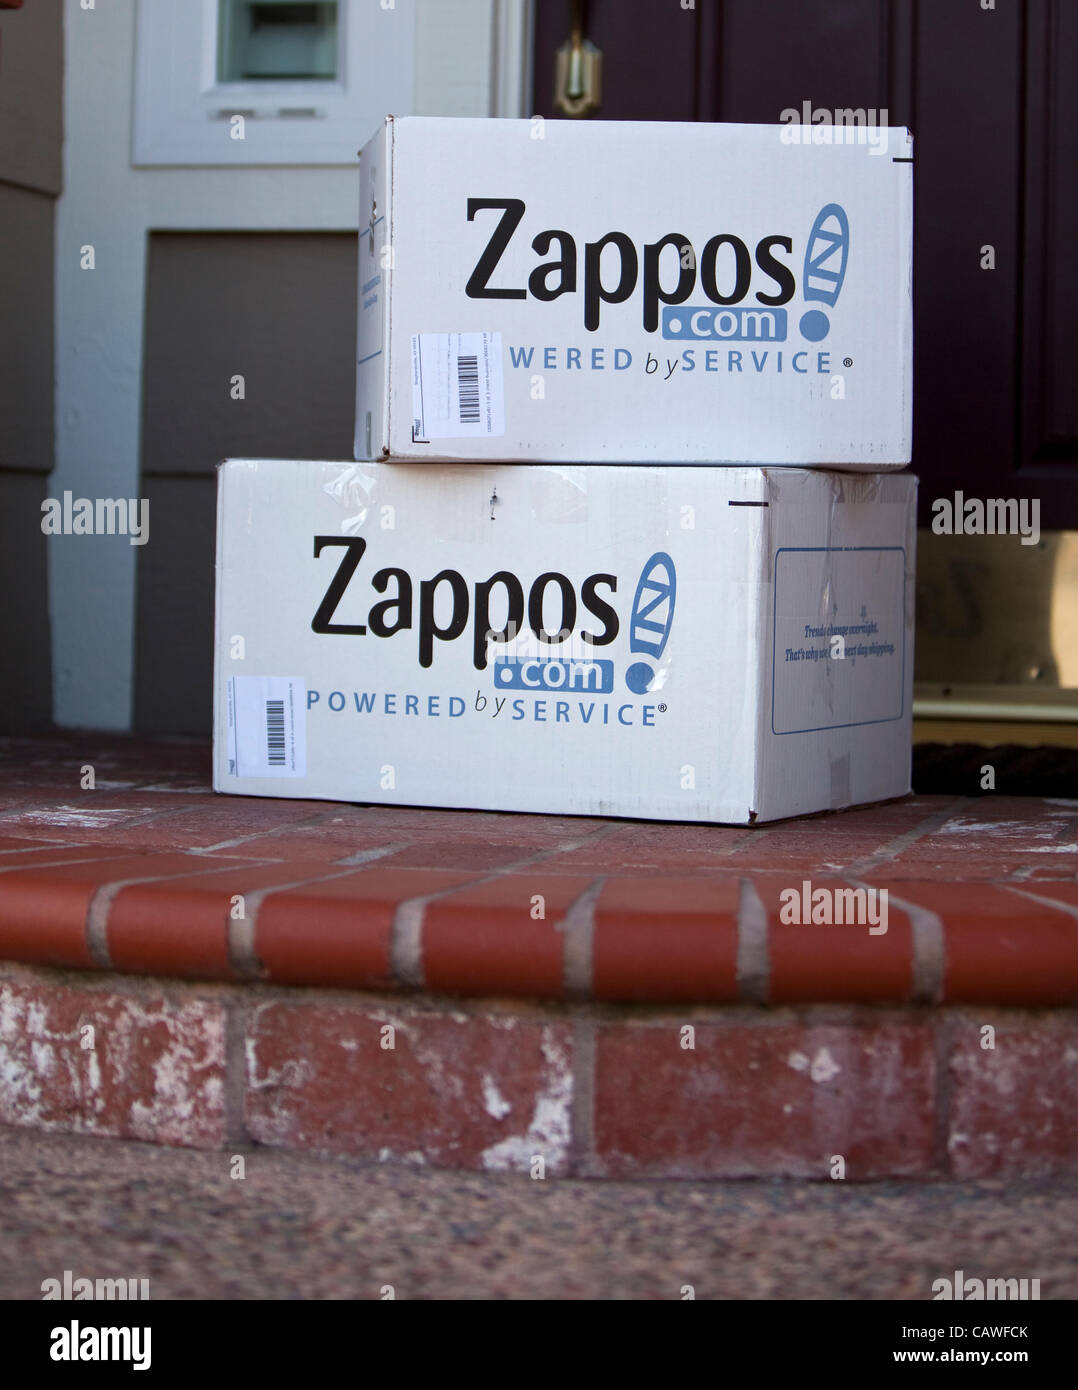 amazon bought zappos